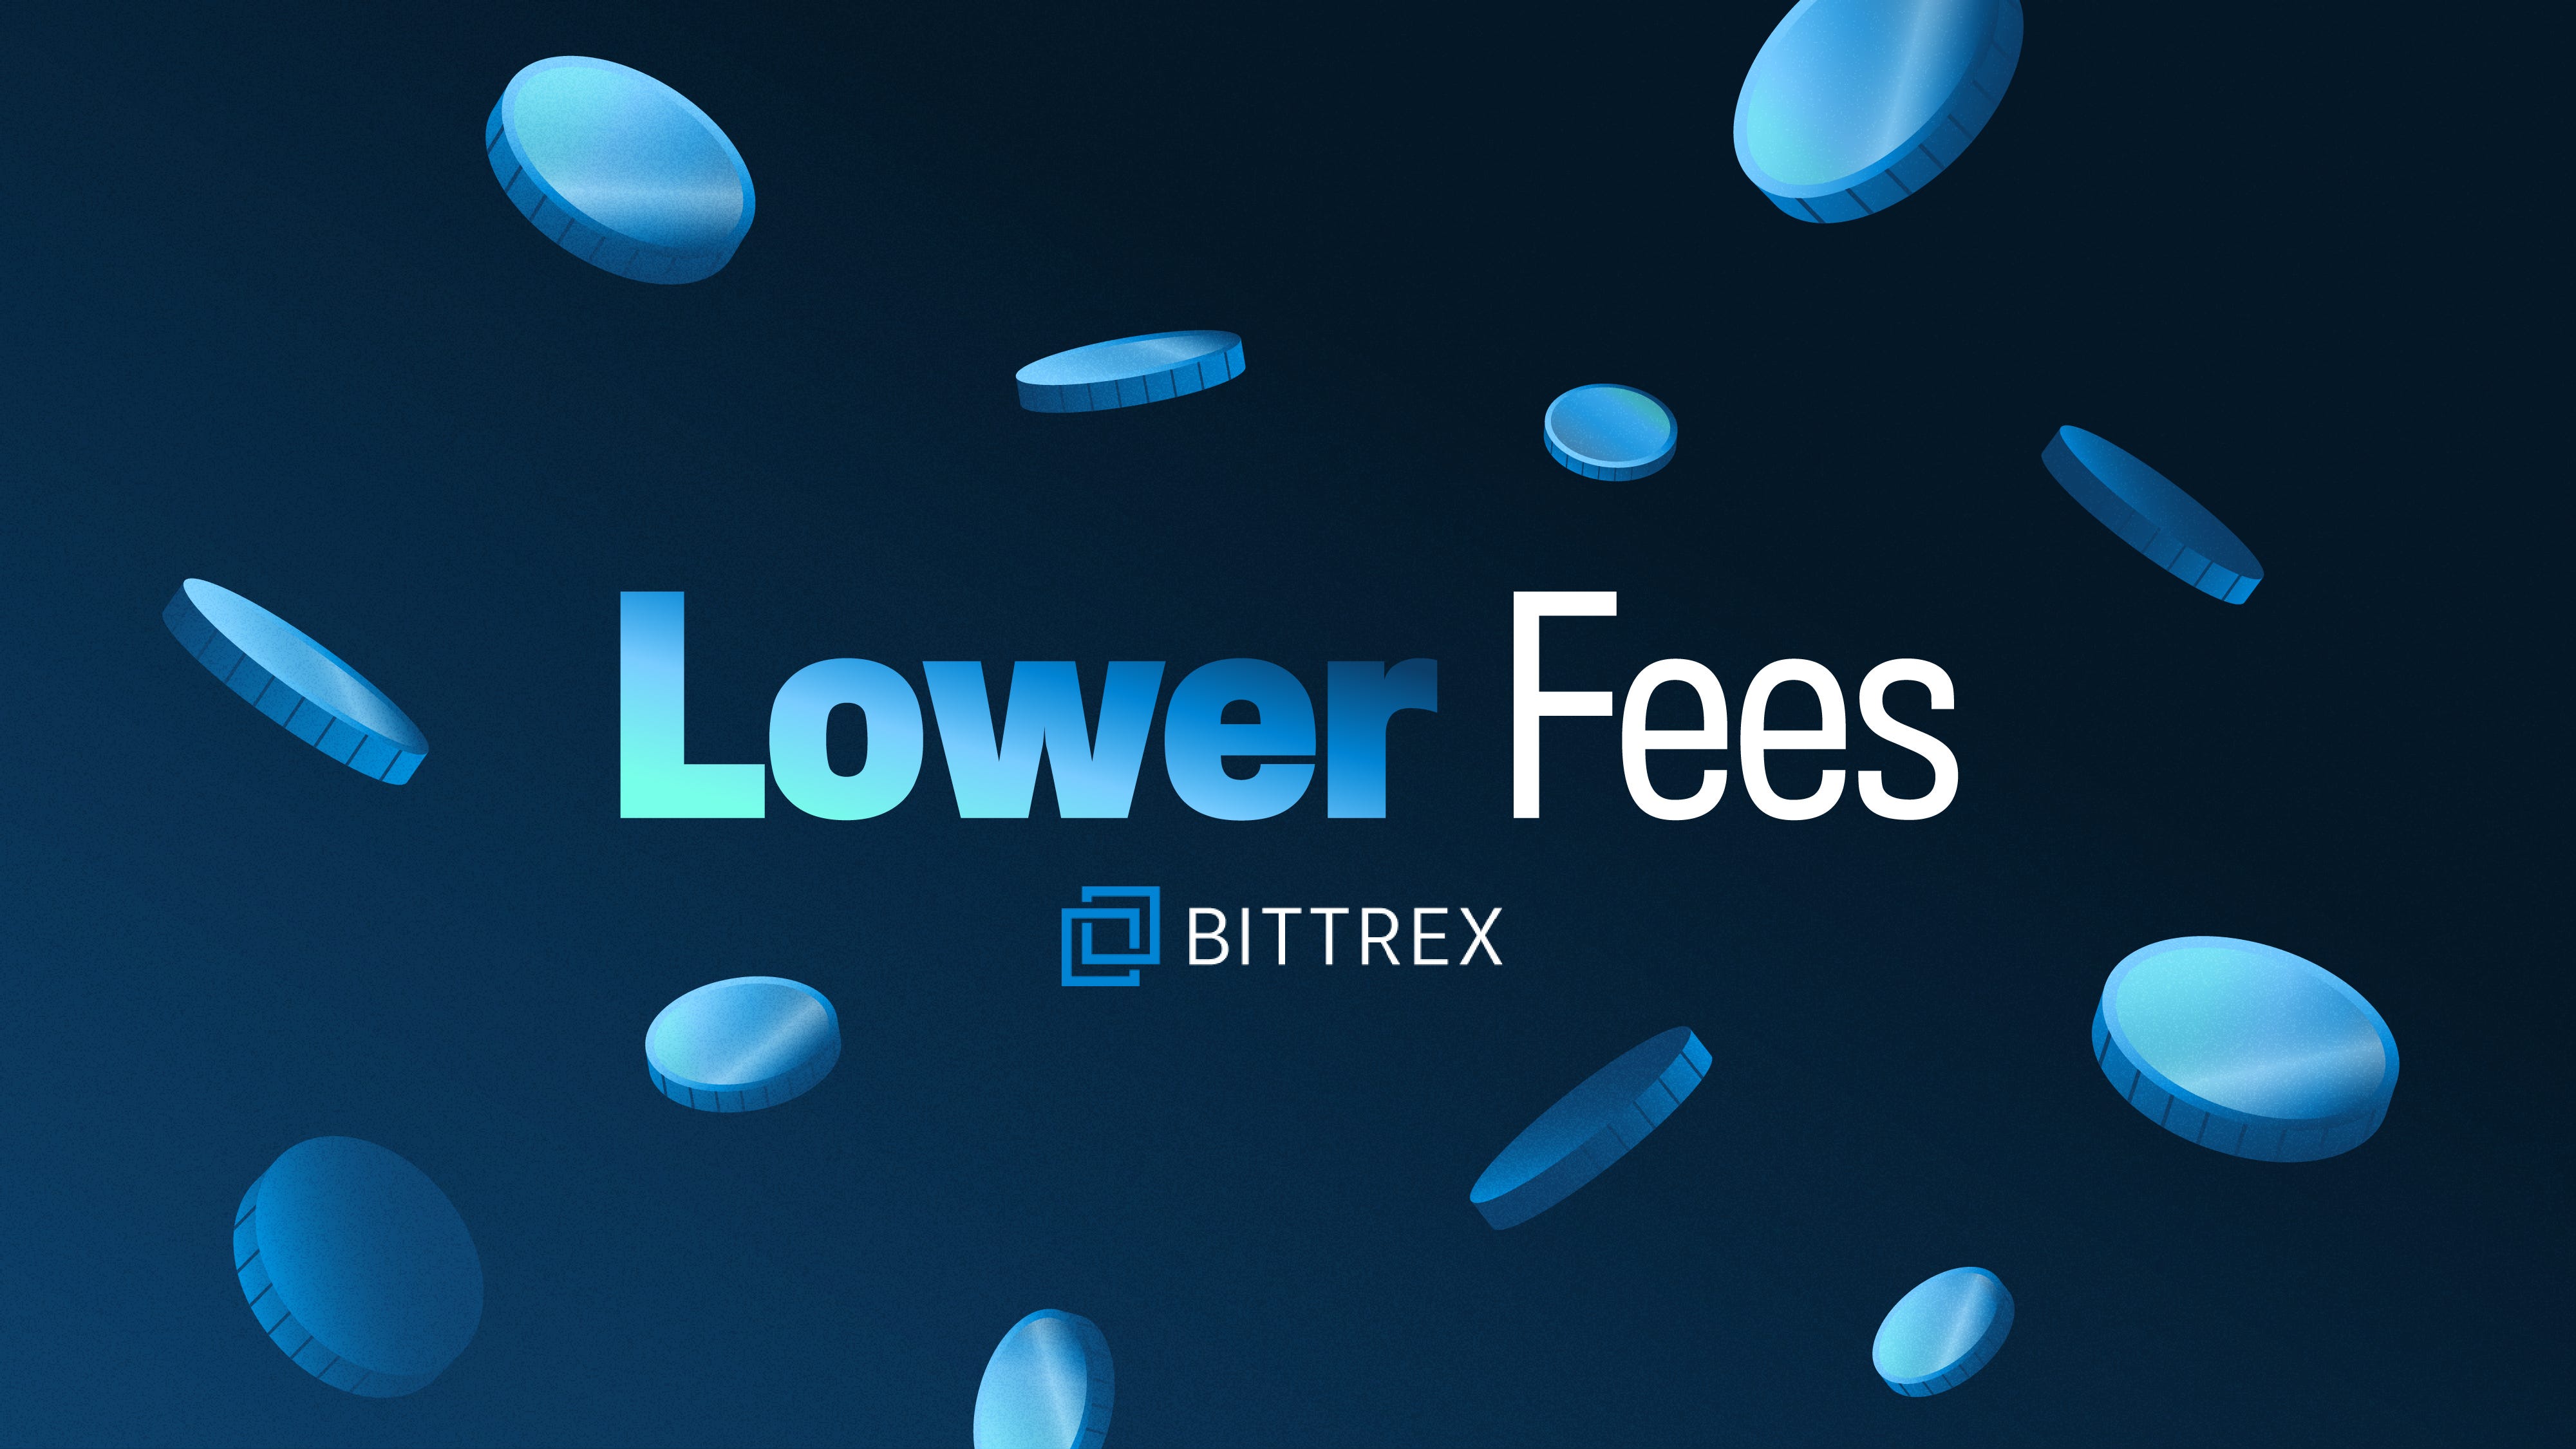 Bittrex Announces Lower Maker/Taker Trading Fees - Bittrex ...